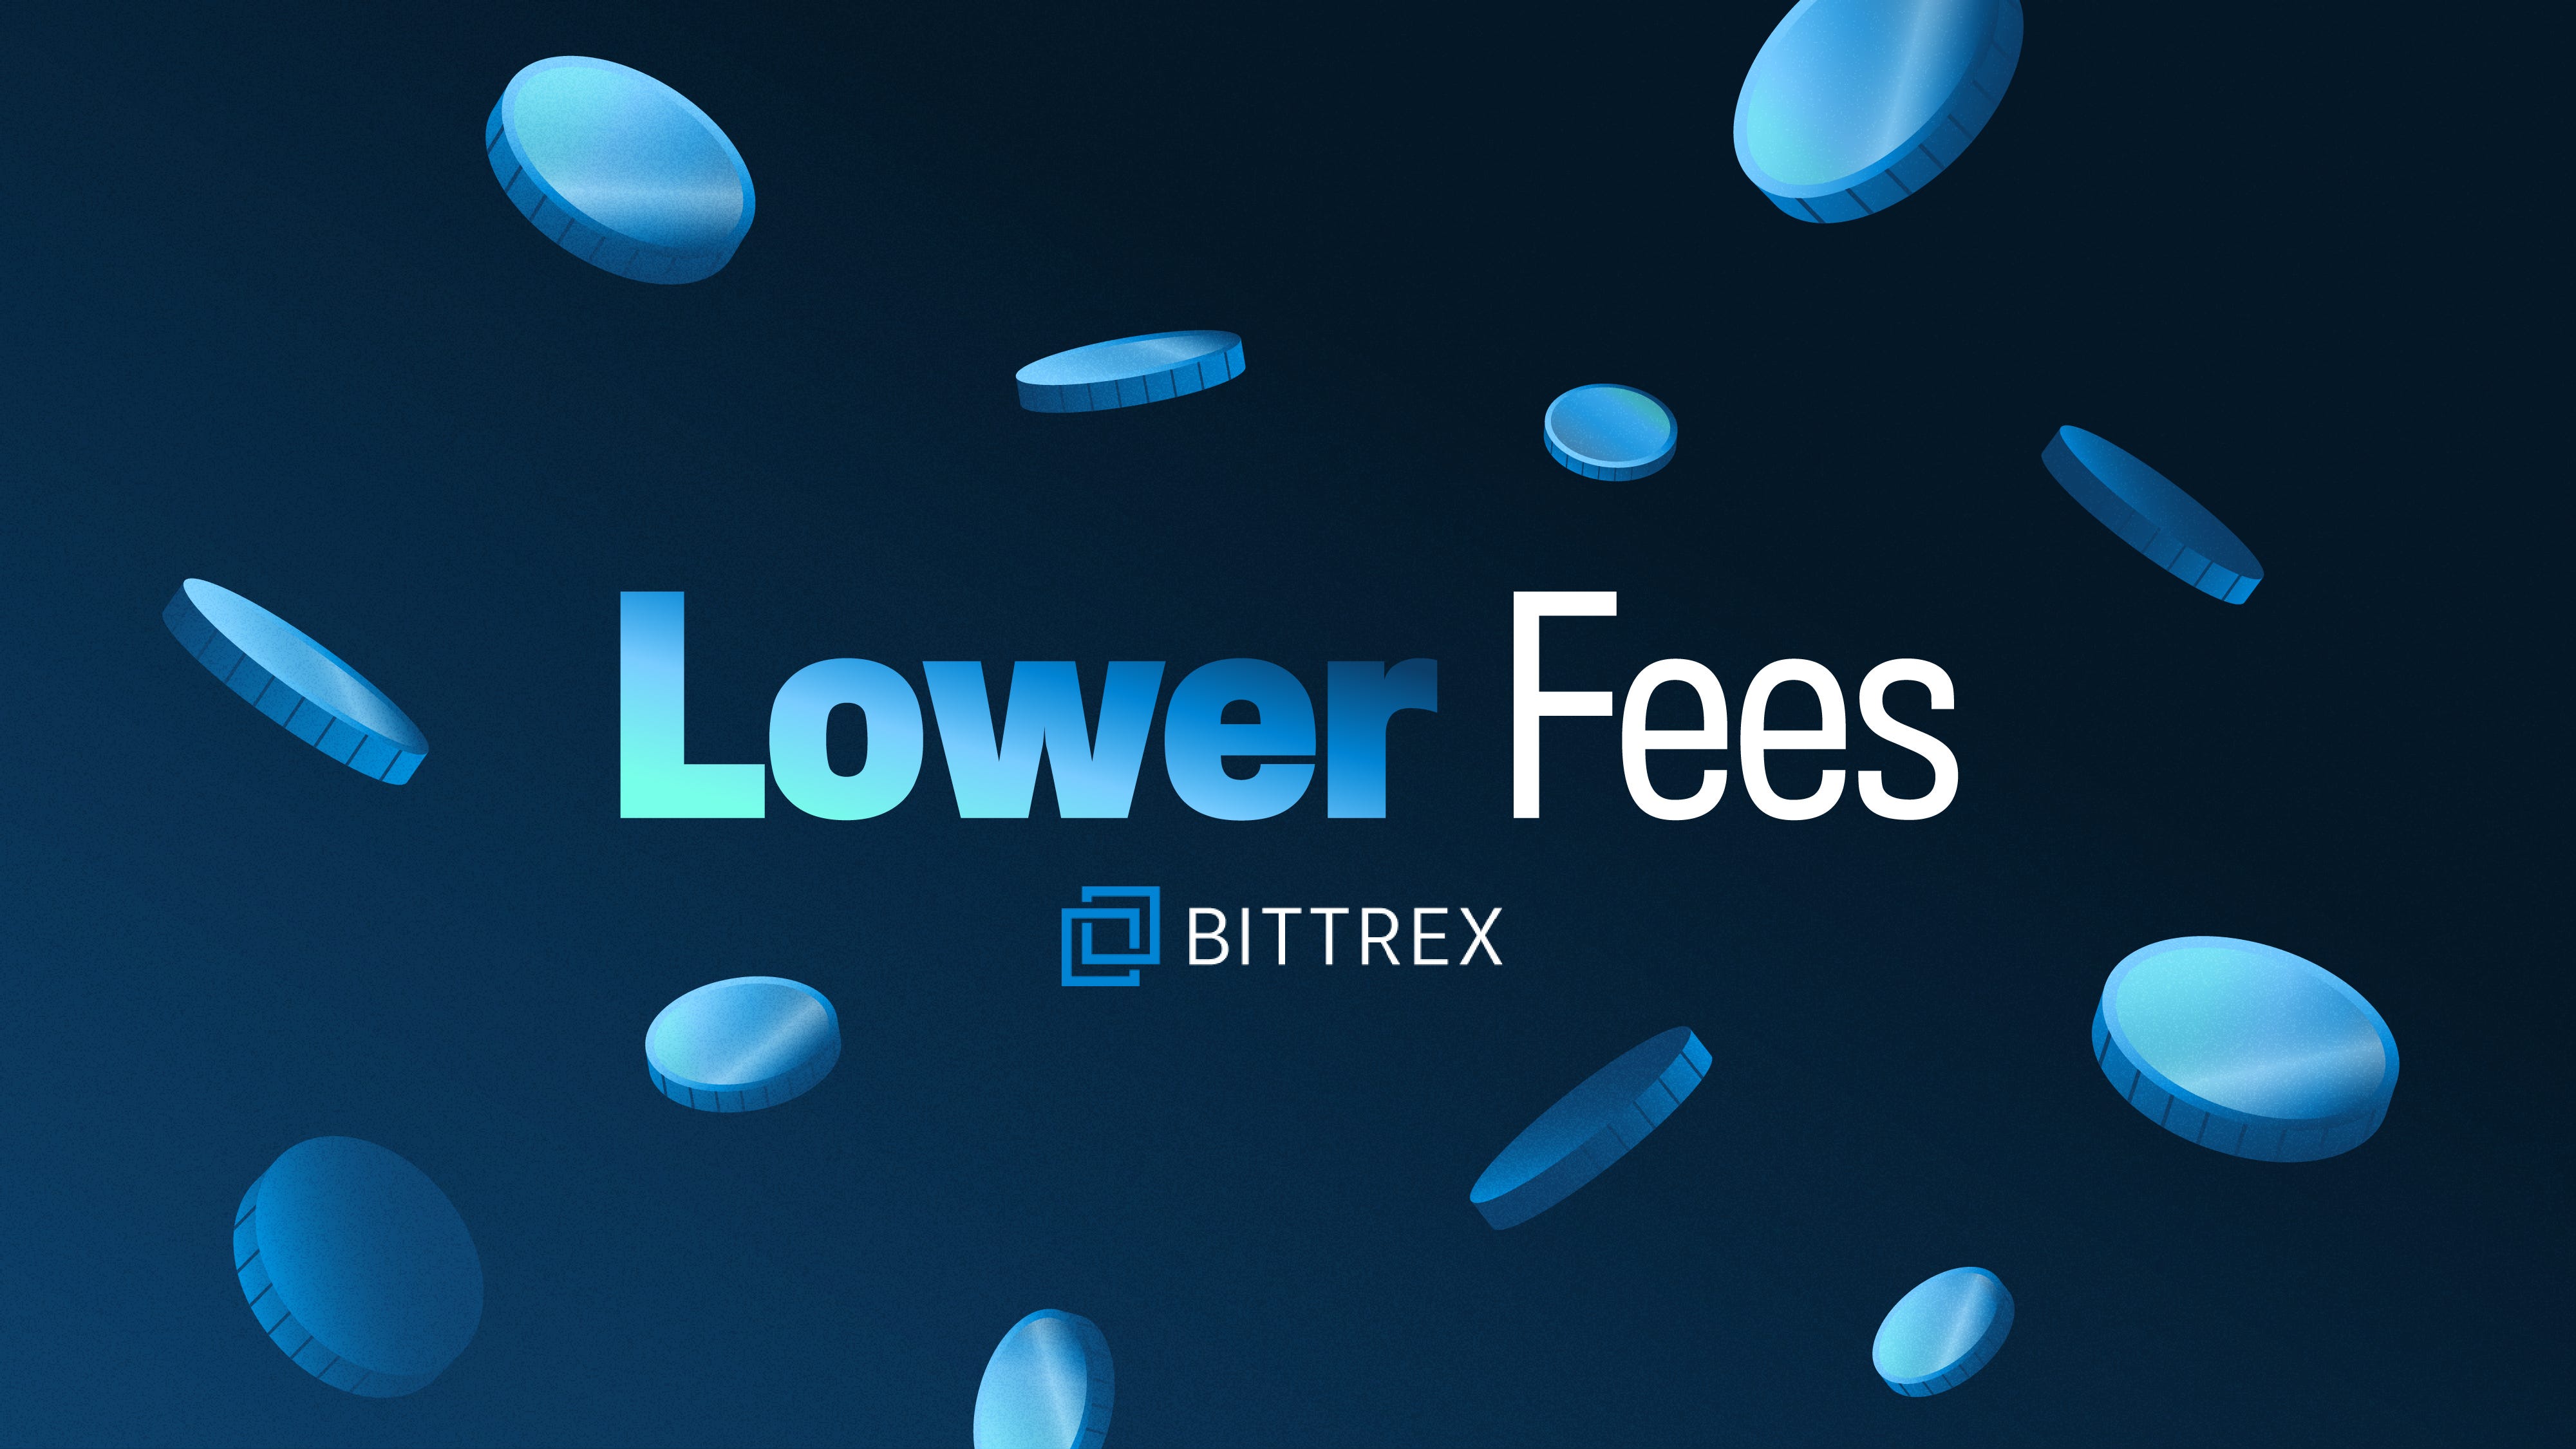 Bittrex Announces Lower Maker/Taker Trading Fees - Bittrex ...